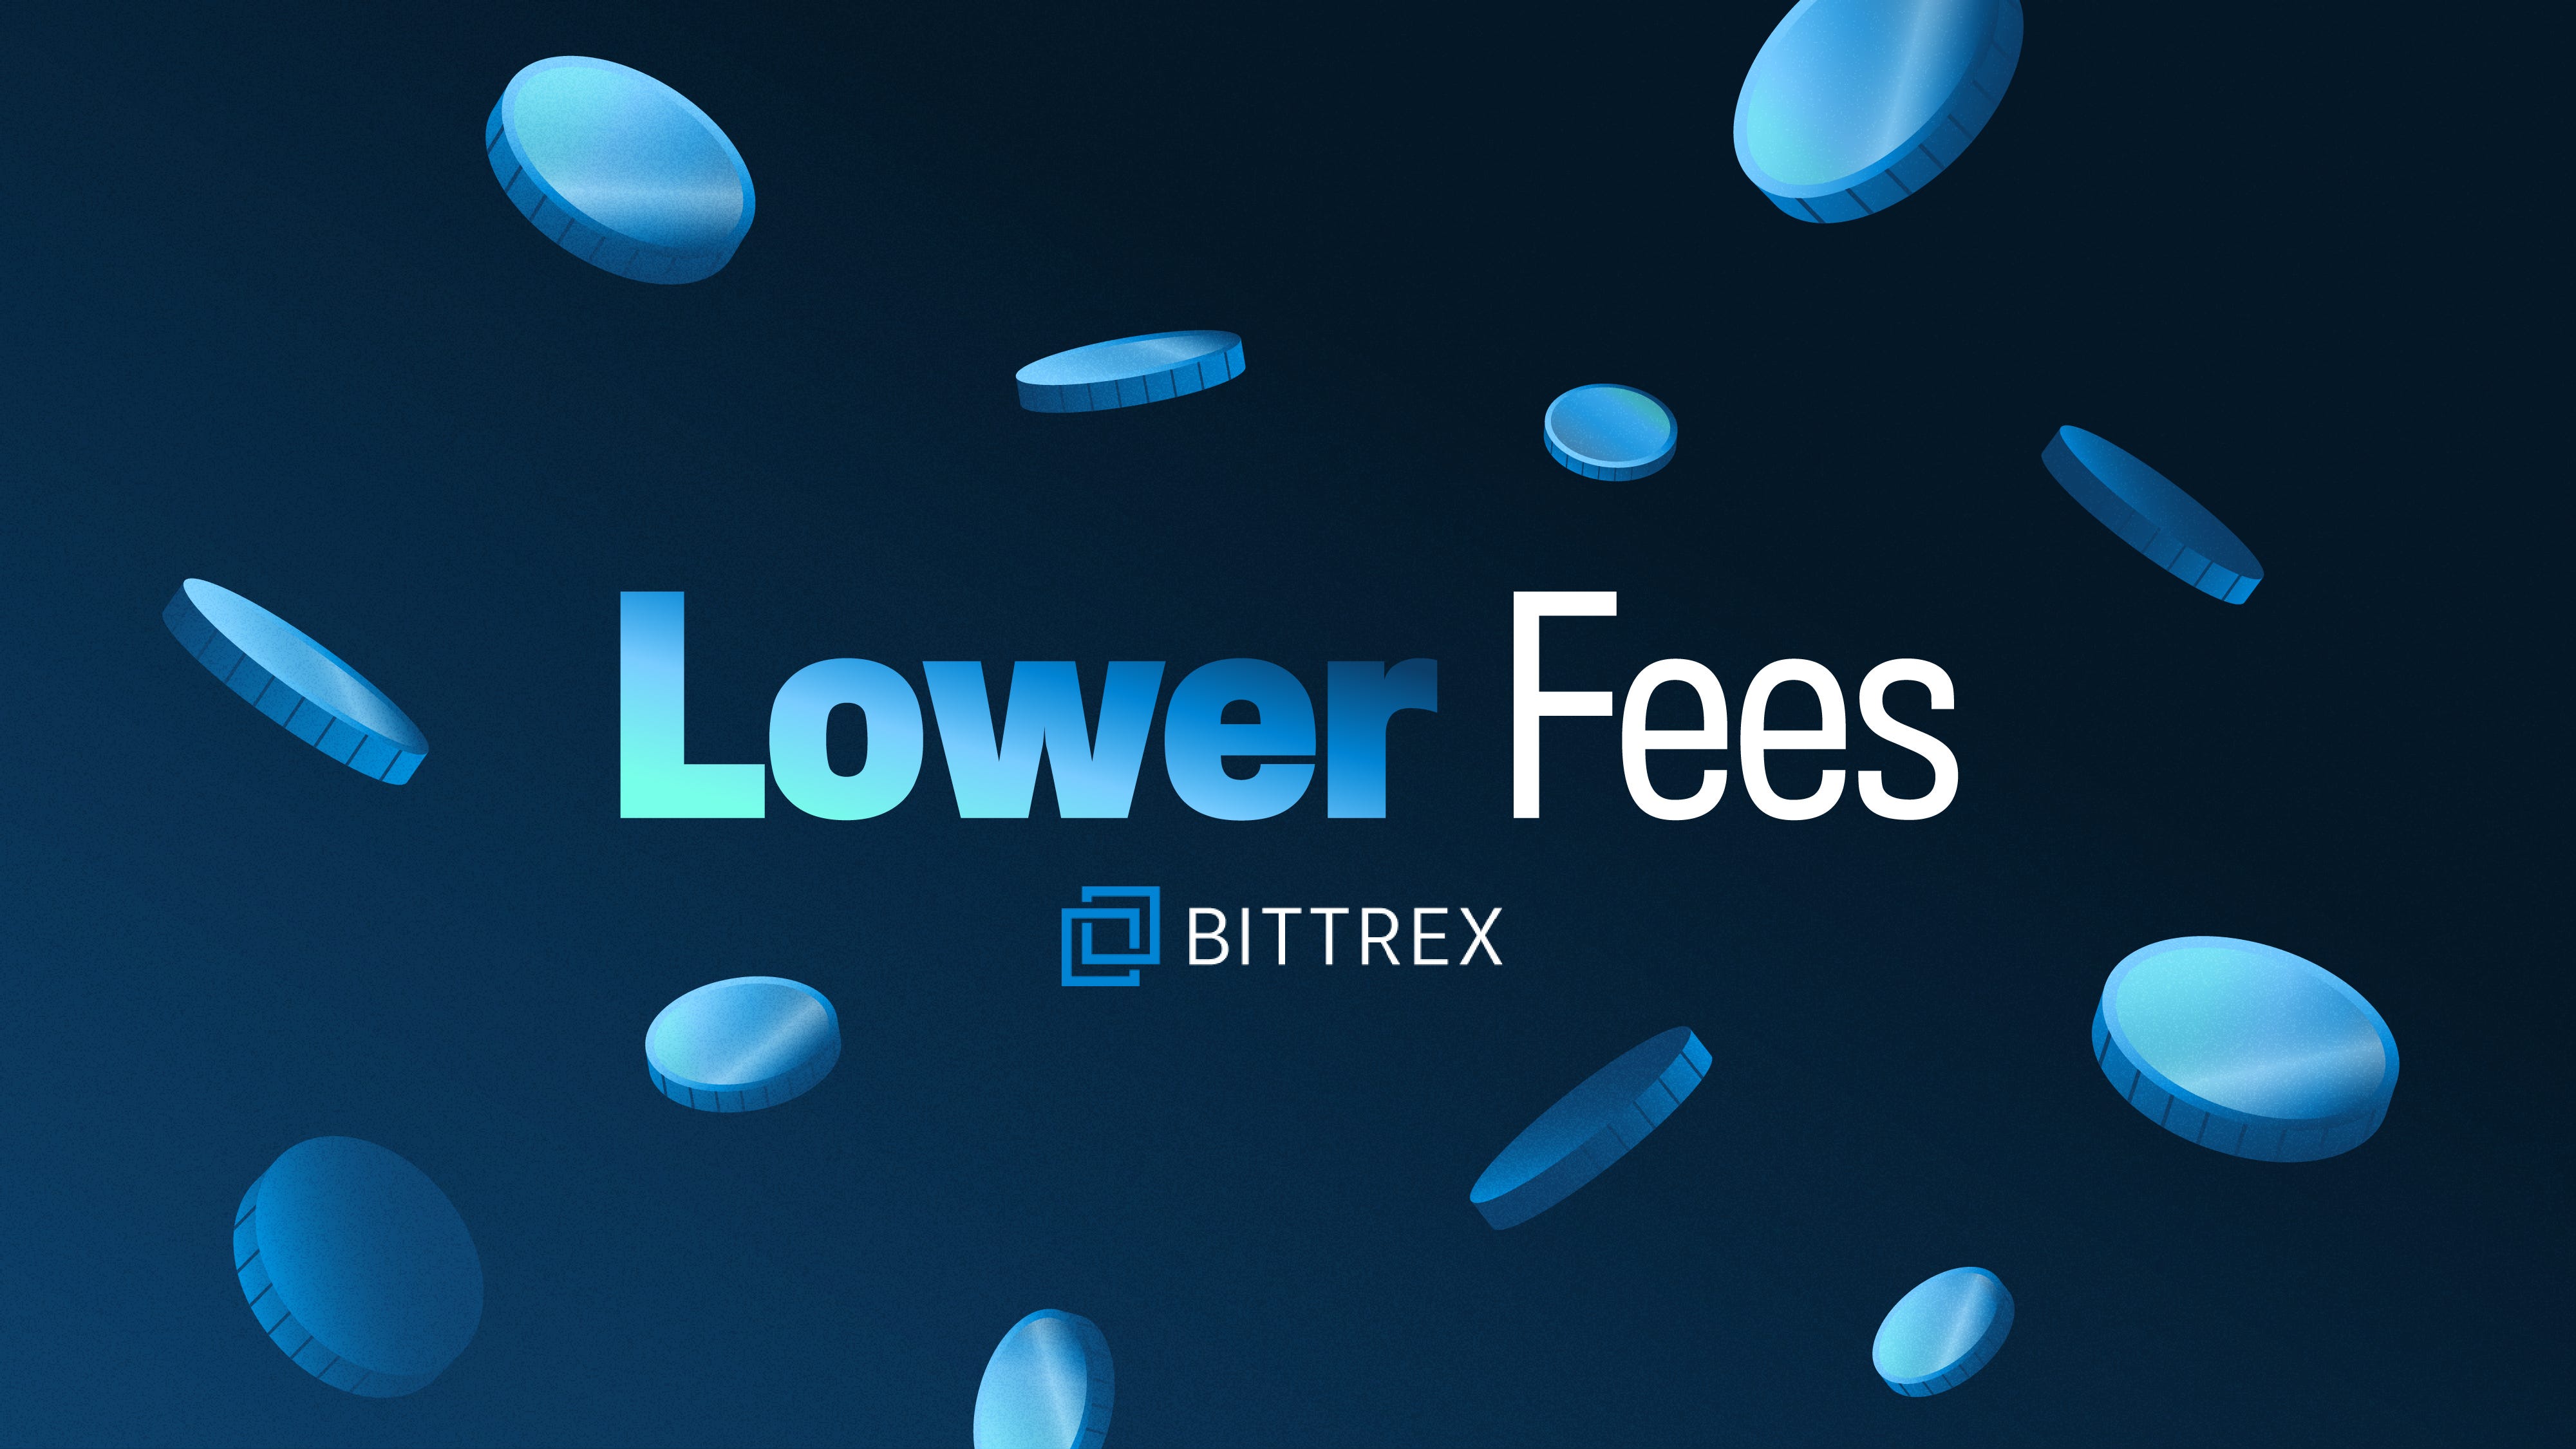 Bittrex Announces Lower Maker/Taker Trading Fees - Bittrex ...